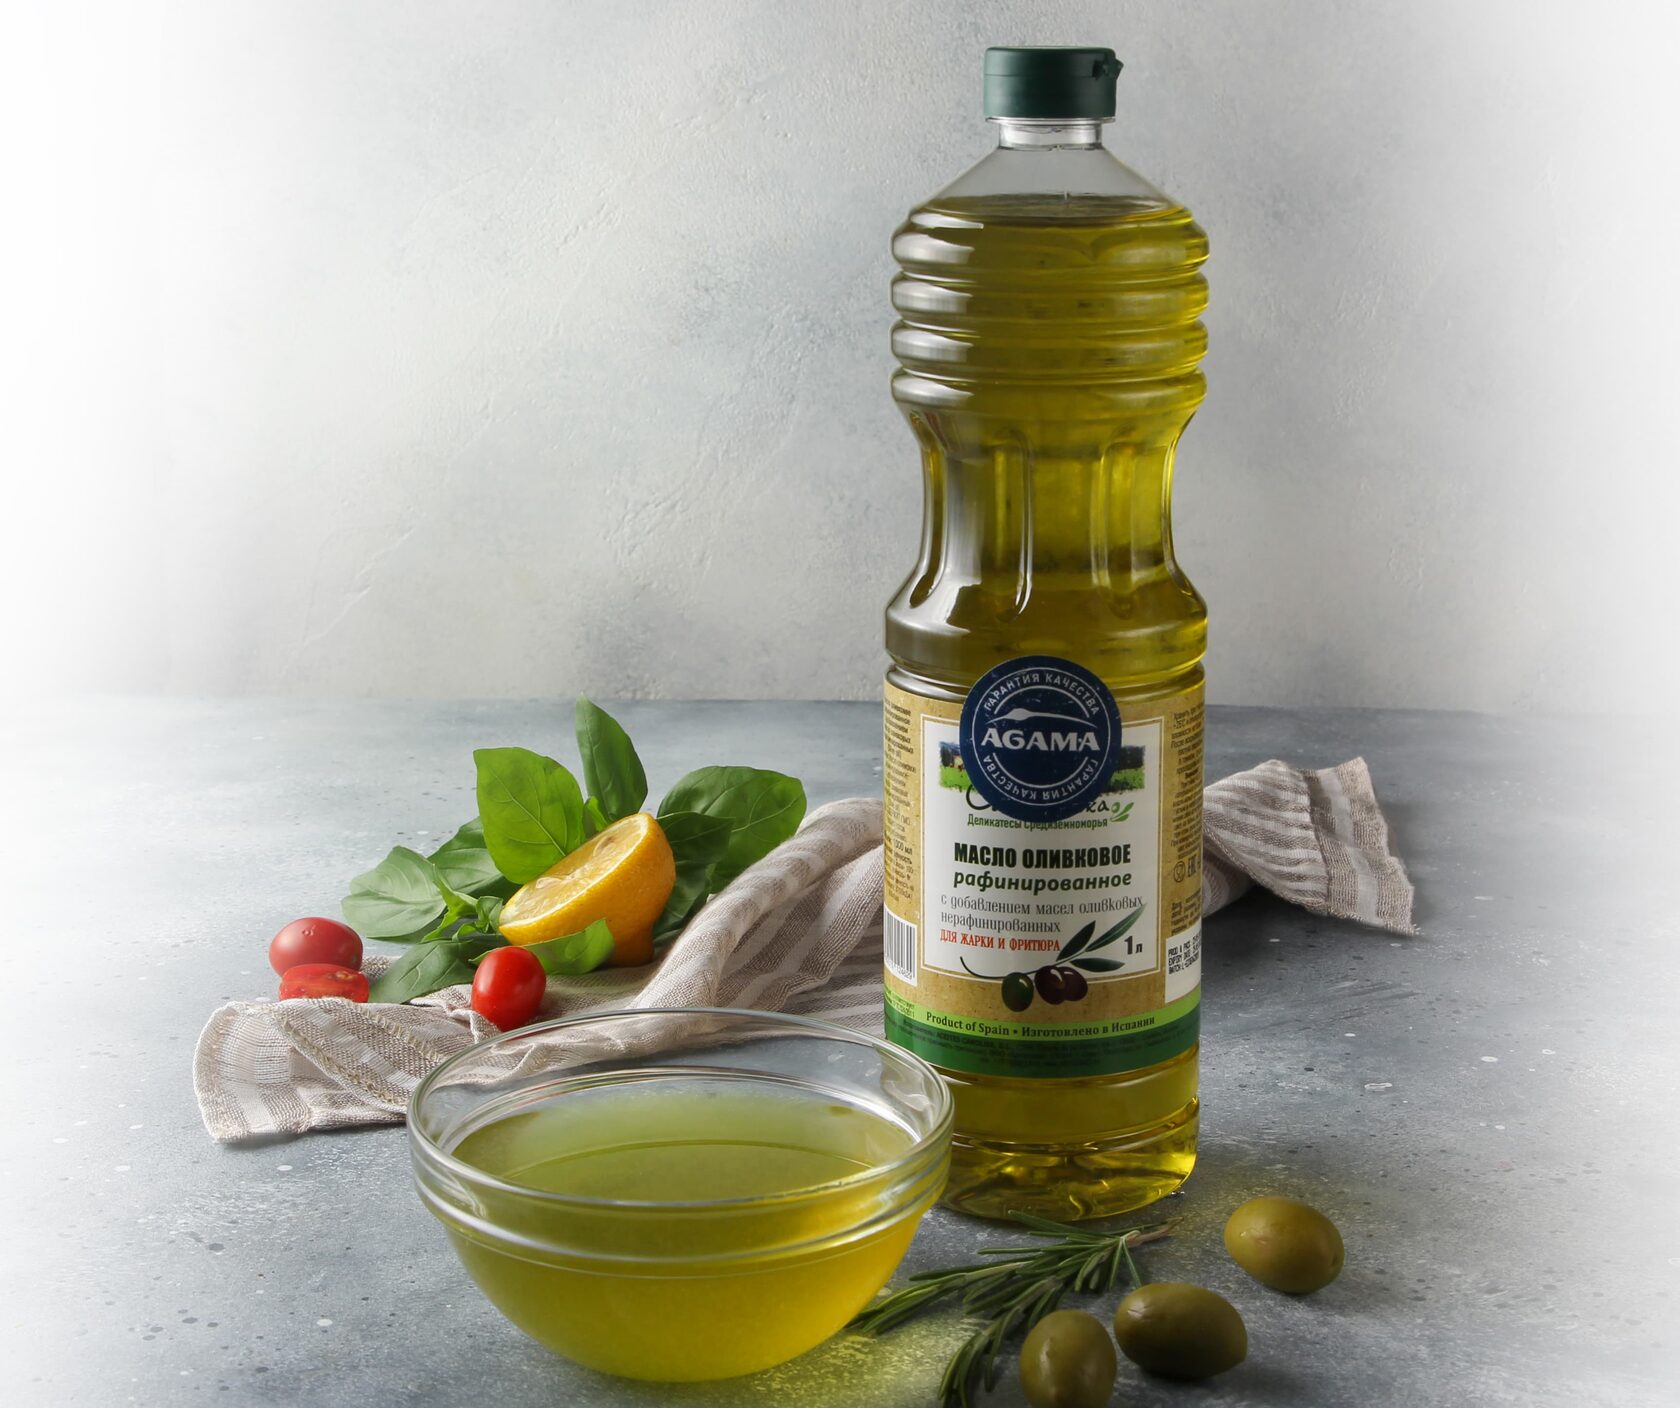 Что значит нерафинированное масло. Масло оливковое "Olivateca" Extra Virgin 1000 мл. Оливковое масло Olive Oil product, 1000 мл. Масло оливковое Olivateca рафинированное 1л. Sofos Pomace масло оливковое , 500 мл.